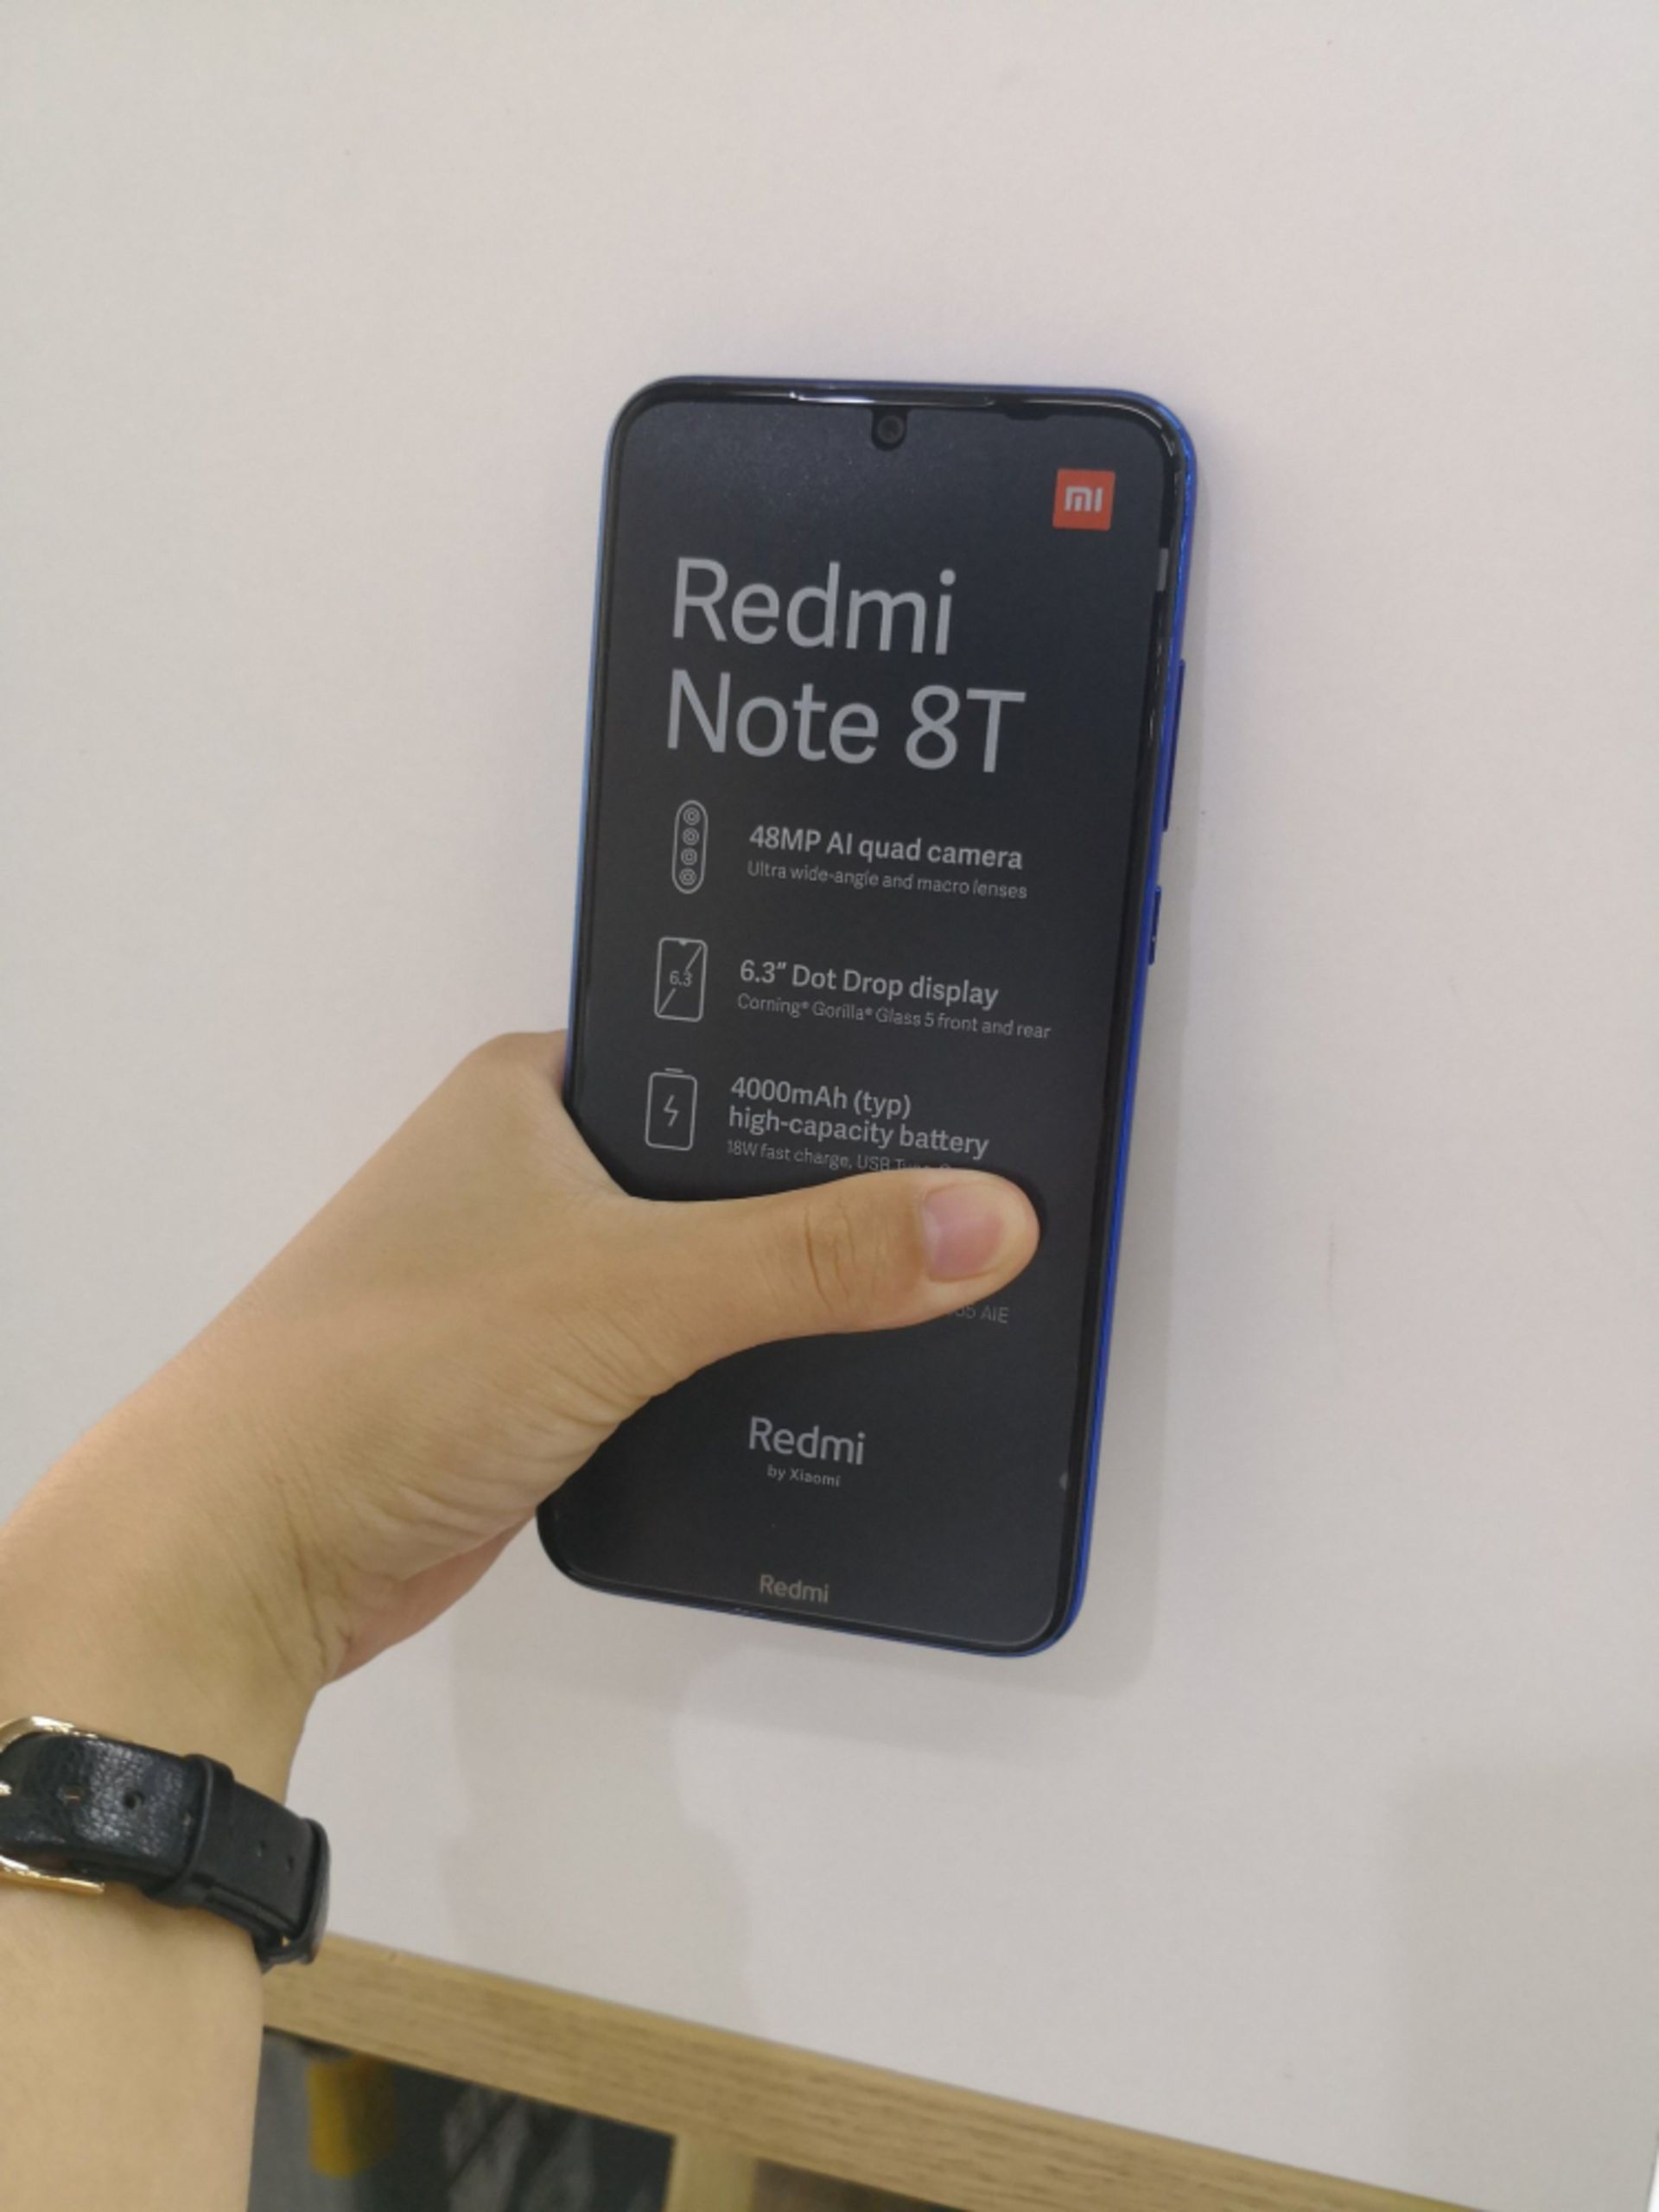 شیائومی ردمی نوت 8 تی / Xiaomi Redmi Note 8T